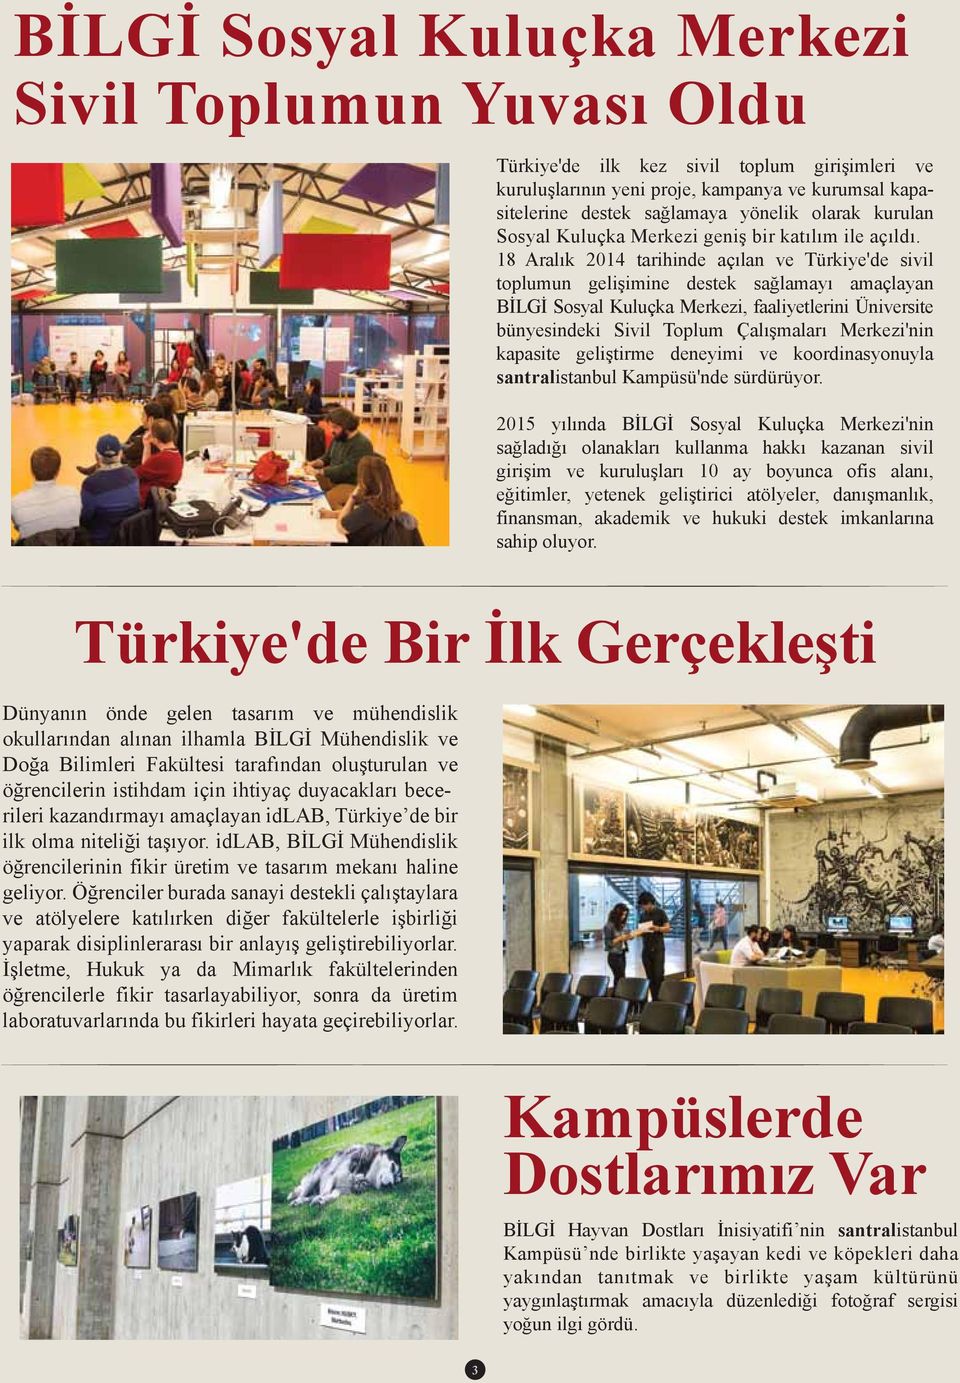 18 Aralık 2014 tarihinde açılan ve Türkiye'de sivil toplumun gelişimine destek sağlamayı amaçlayan BİLGİ Sosyal Kuluçka Merkezi, faaliyetlerini Üniversite bünyesindeki Sivil Toplum Çalışmaları